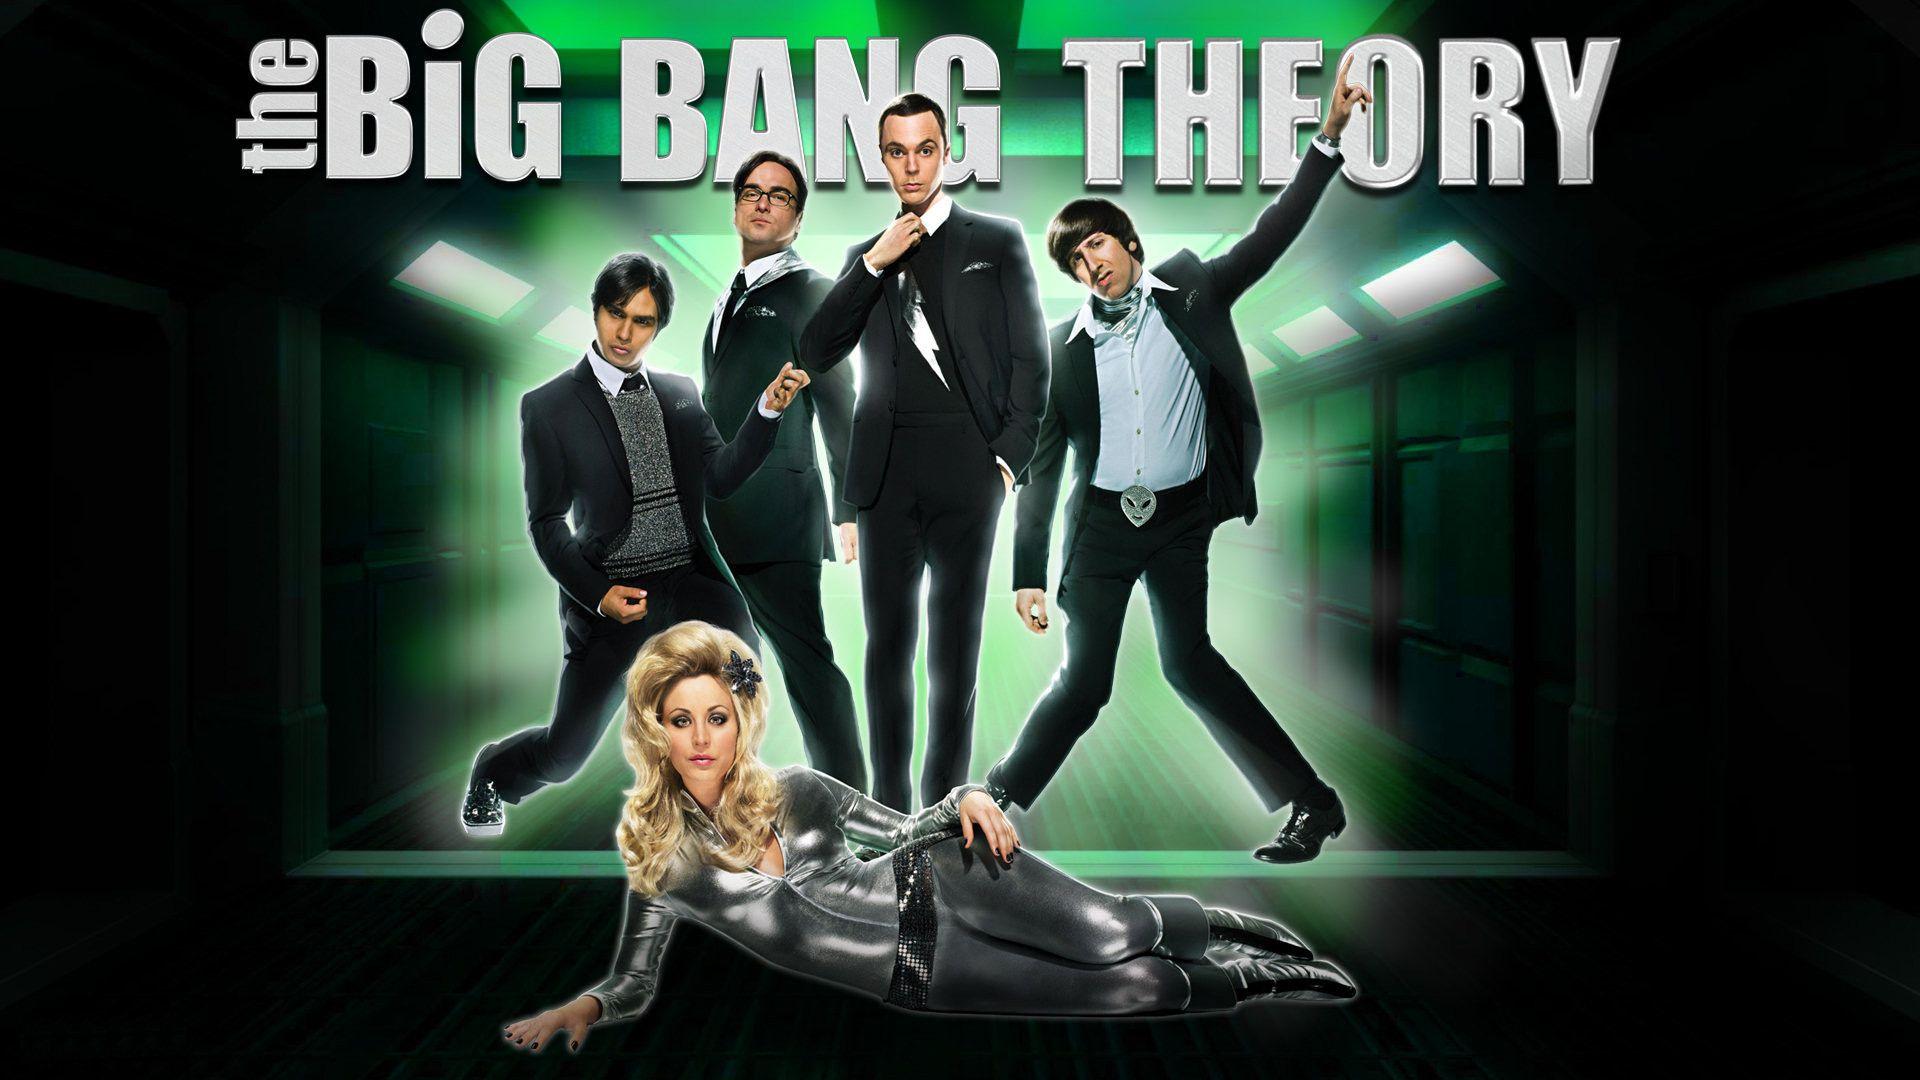 TV Show The Big Bang Theory Cast Penny (The Big Bang Theory) Kaley